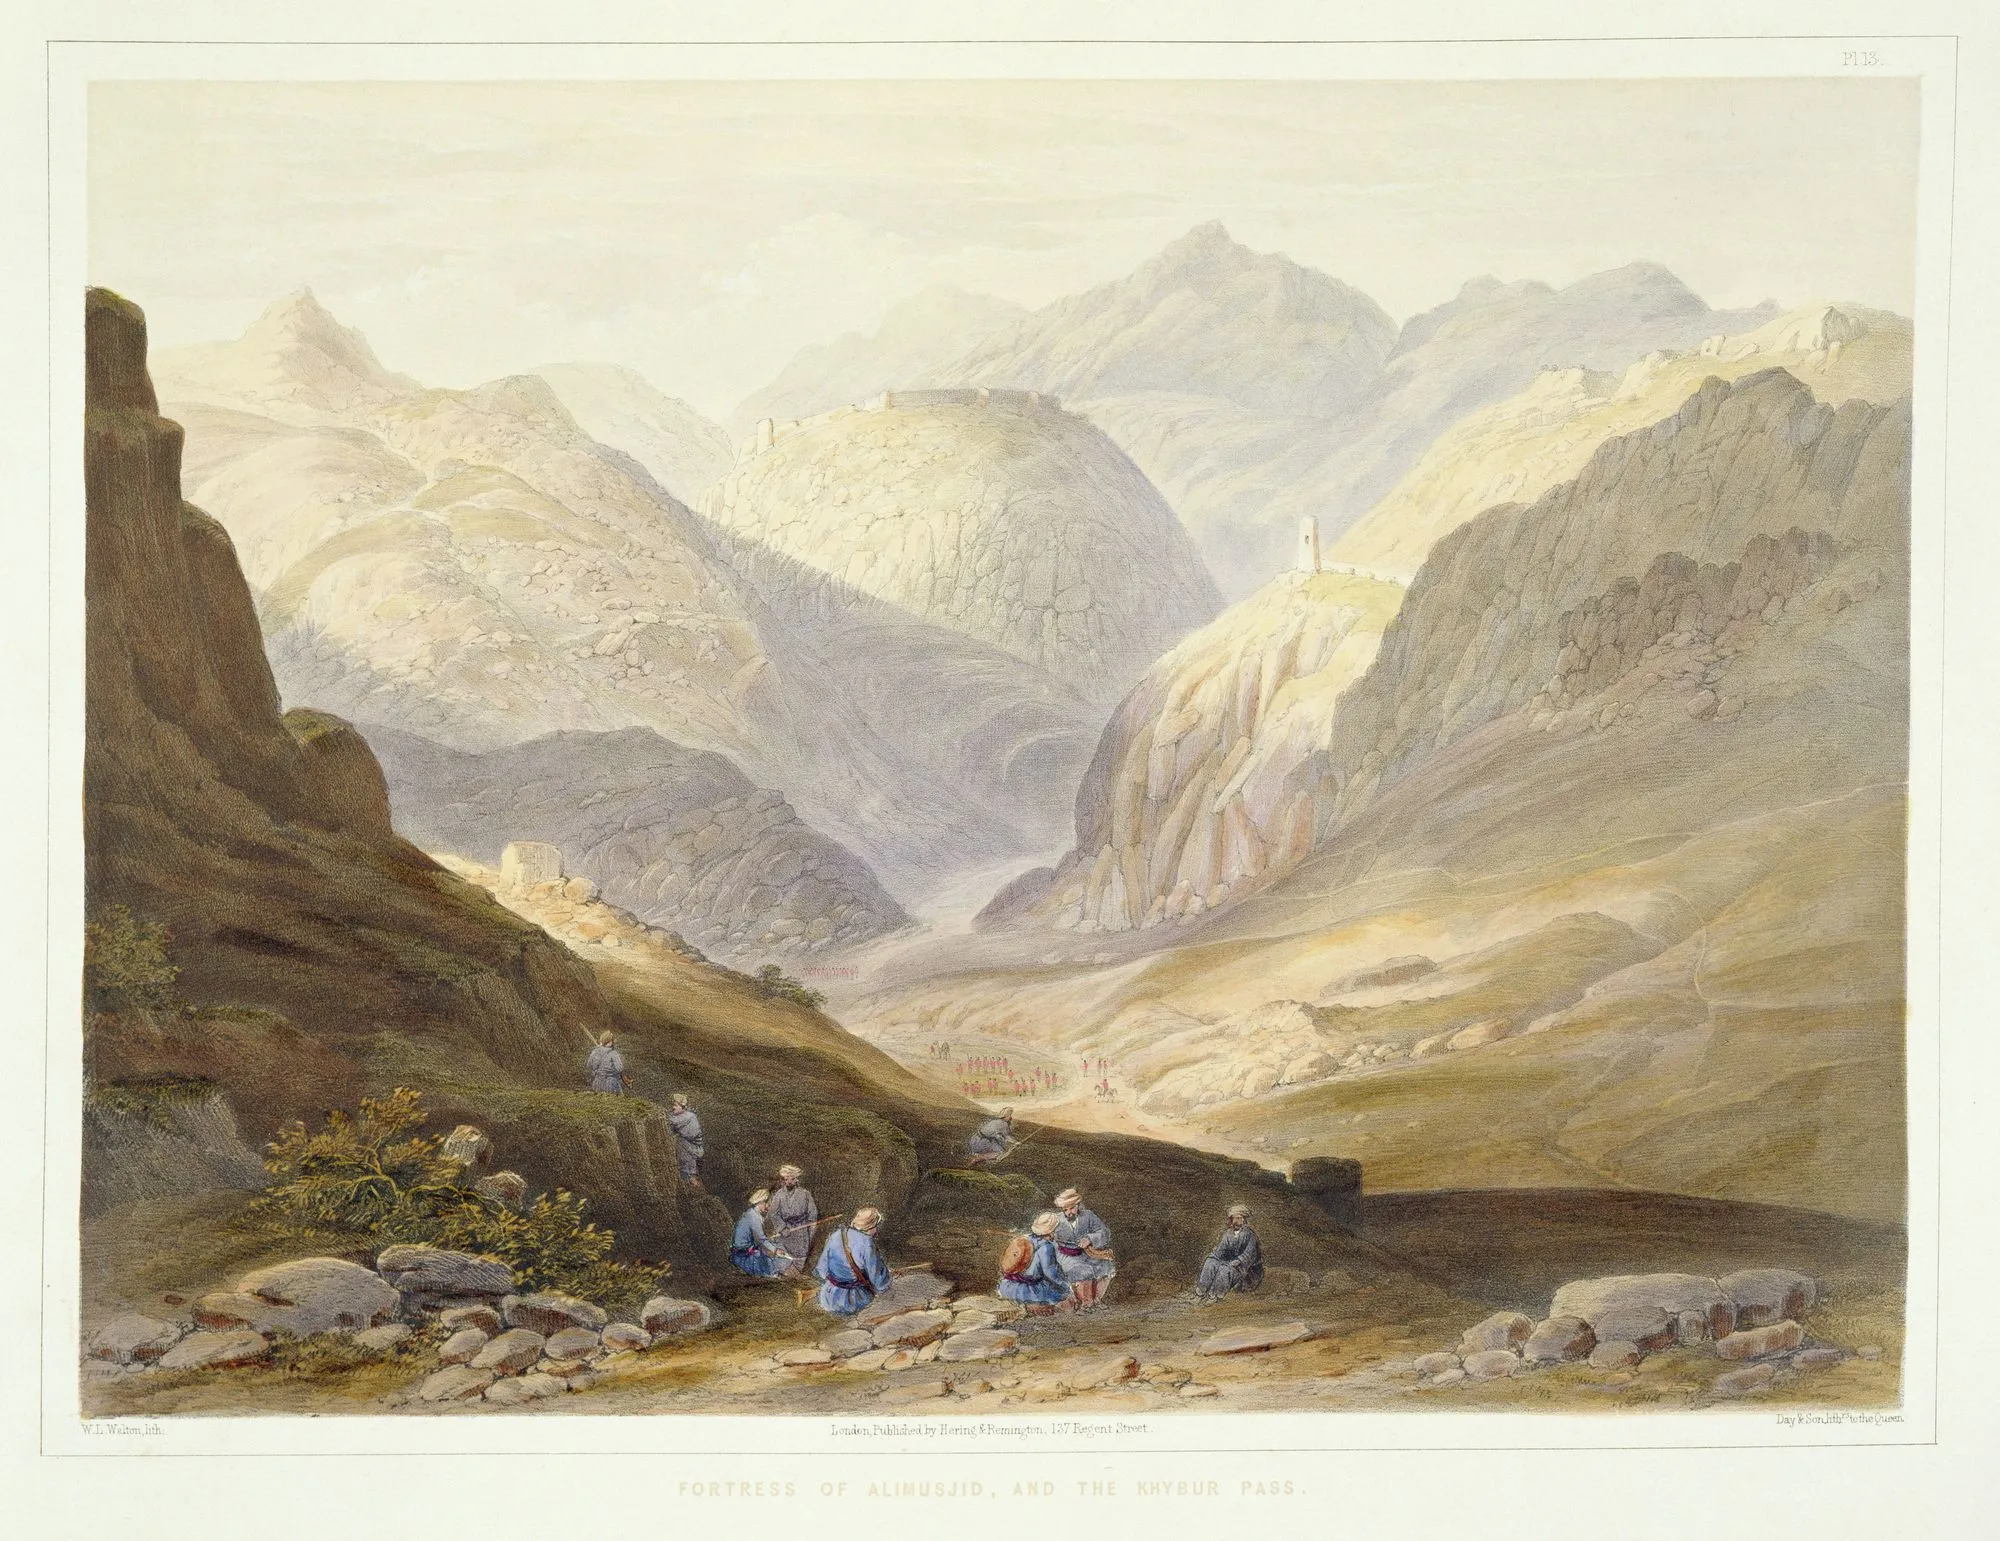 D'après James Rattray, Forteresse
d'Alimusjid et la passe du
Khyber, lithographie extraite de
la série « Scènes, habitants et
costumes d'Afghanistan »,
gravée par W.L. Walton, 1848